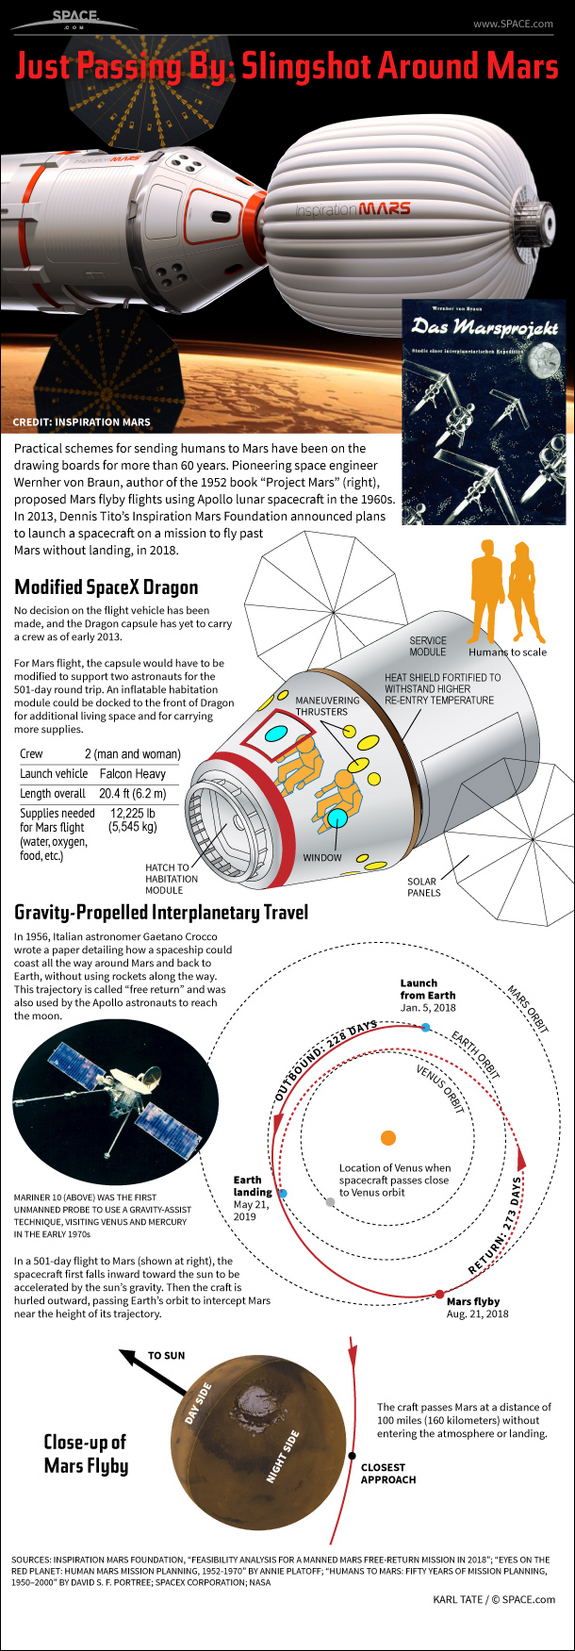 Dowiedz się o odważnej propozycji Dennisa Tito, aby wysłać małżeństwo w 501-dniowy lot kosmiczny wokół planety Mars iz powrotem, z tej infografiki SPACE.com.